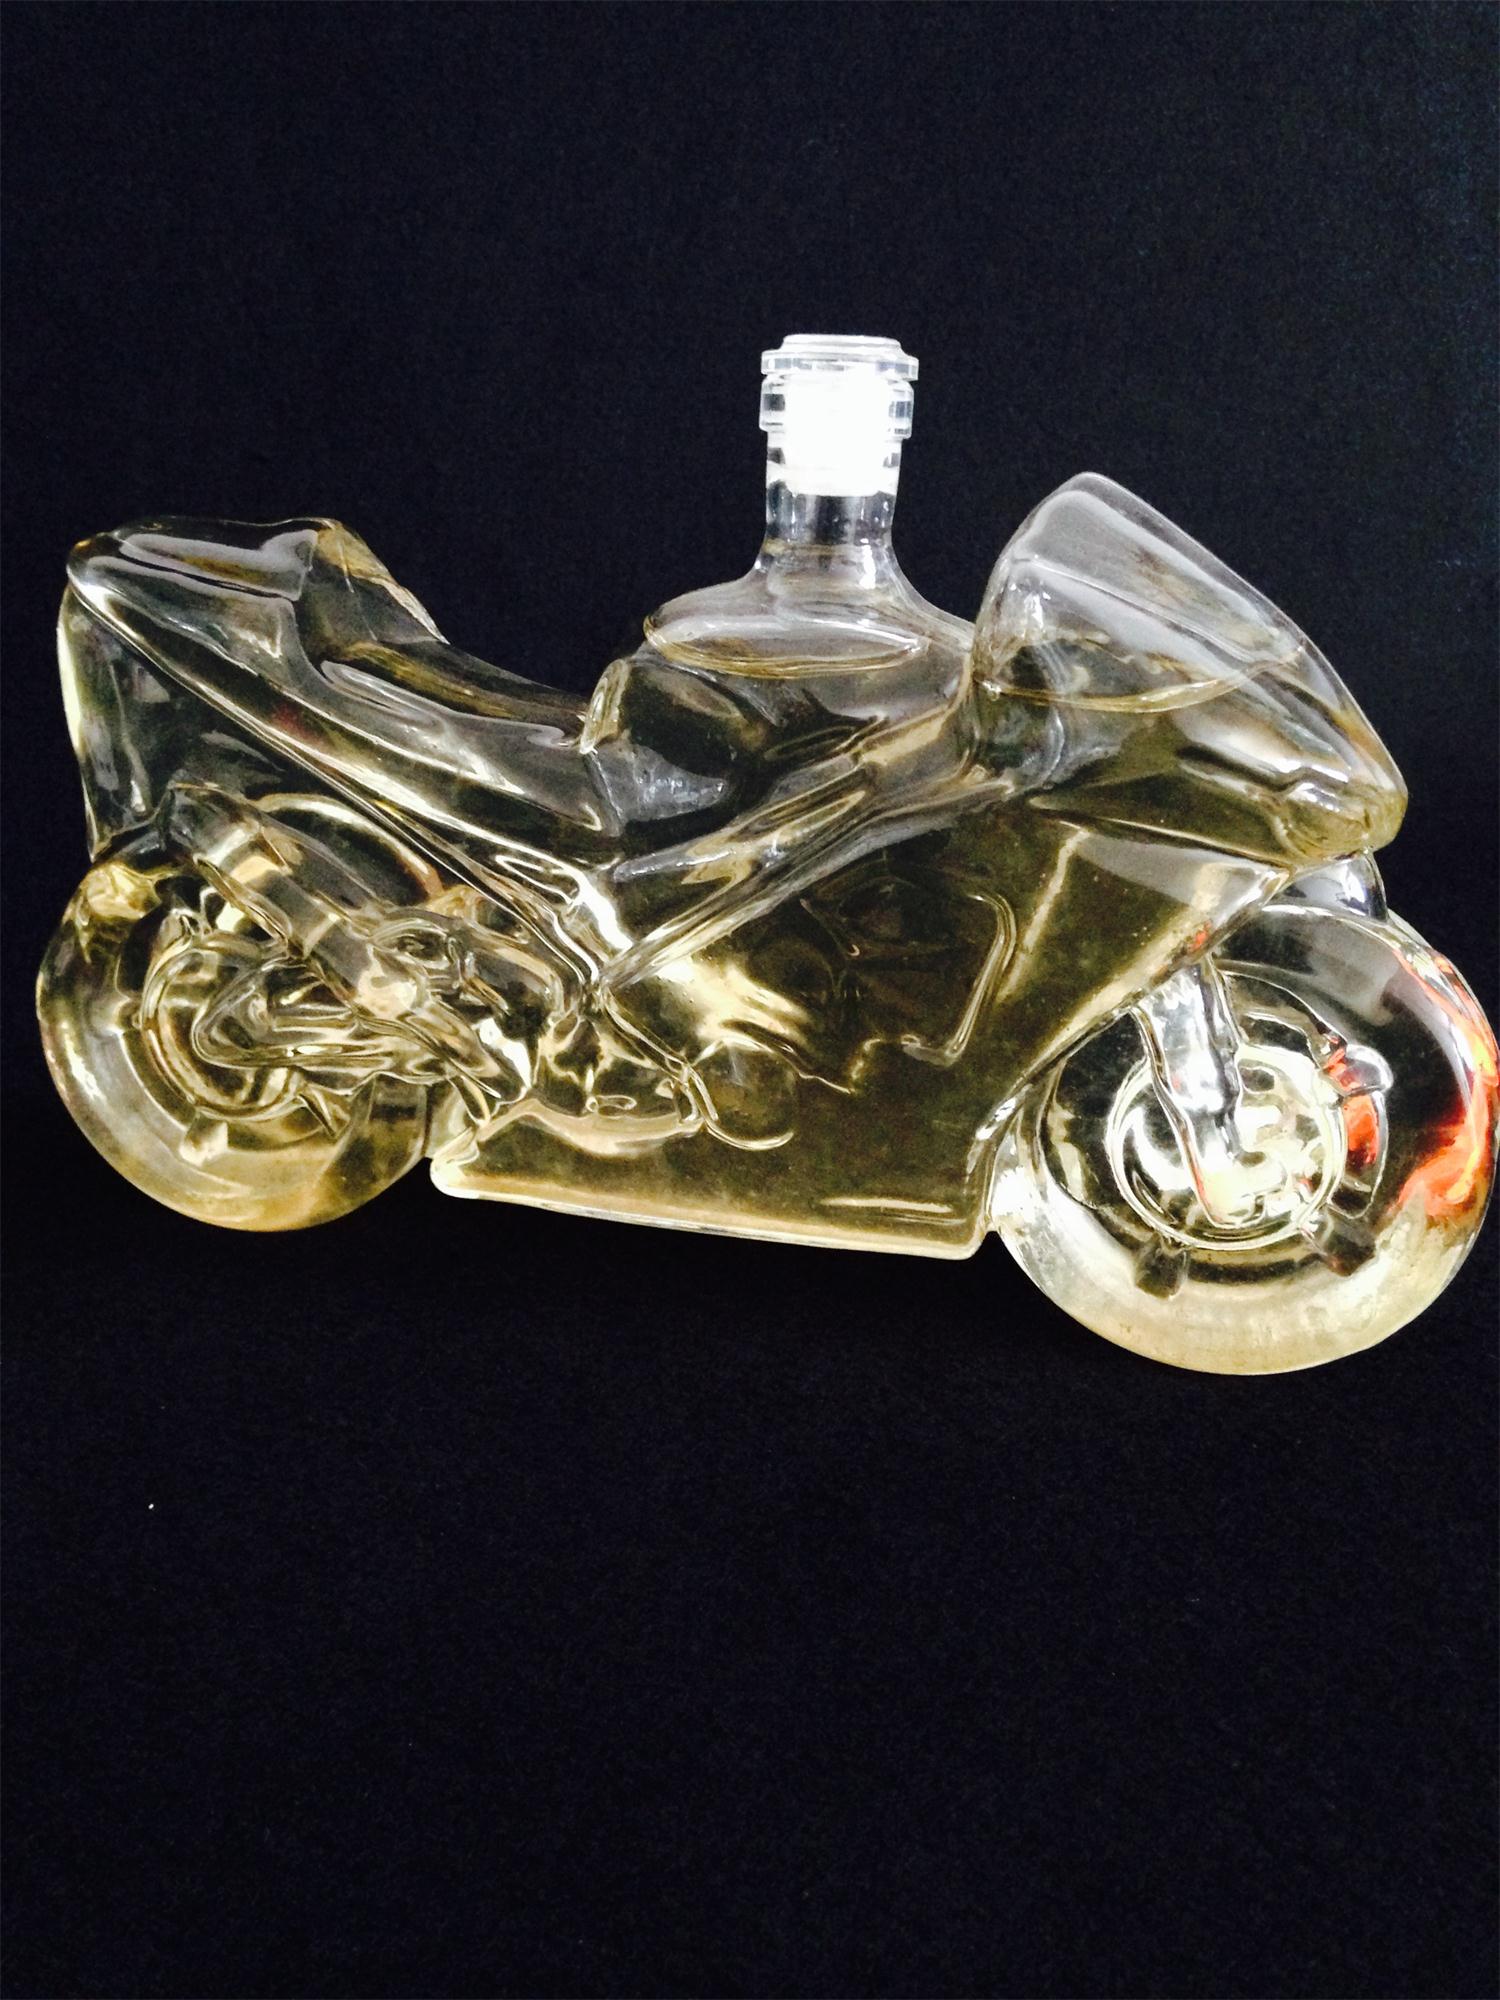 哈雷摩托车造型玻璃工艺酒瓶白酒瓶